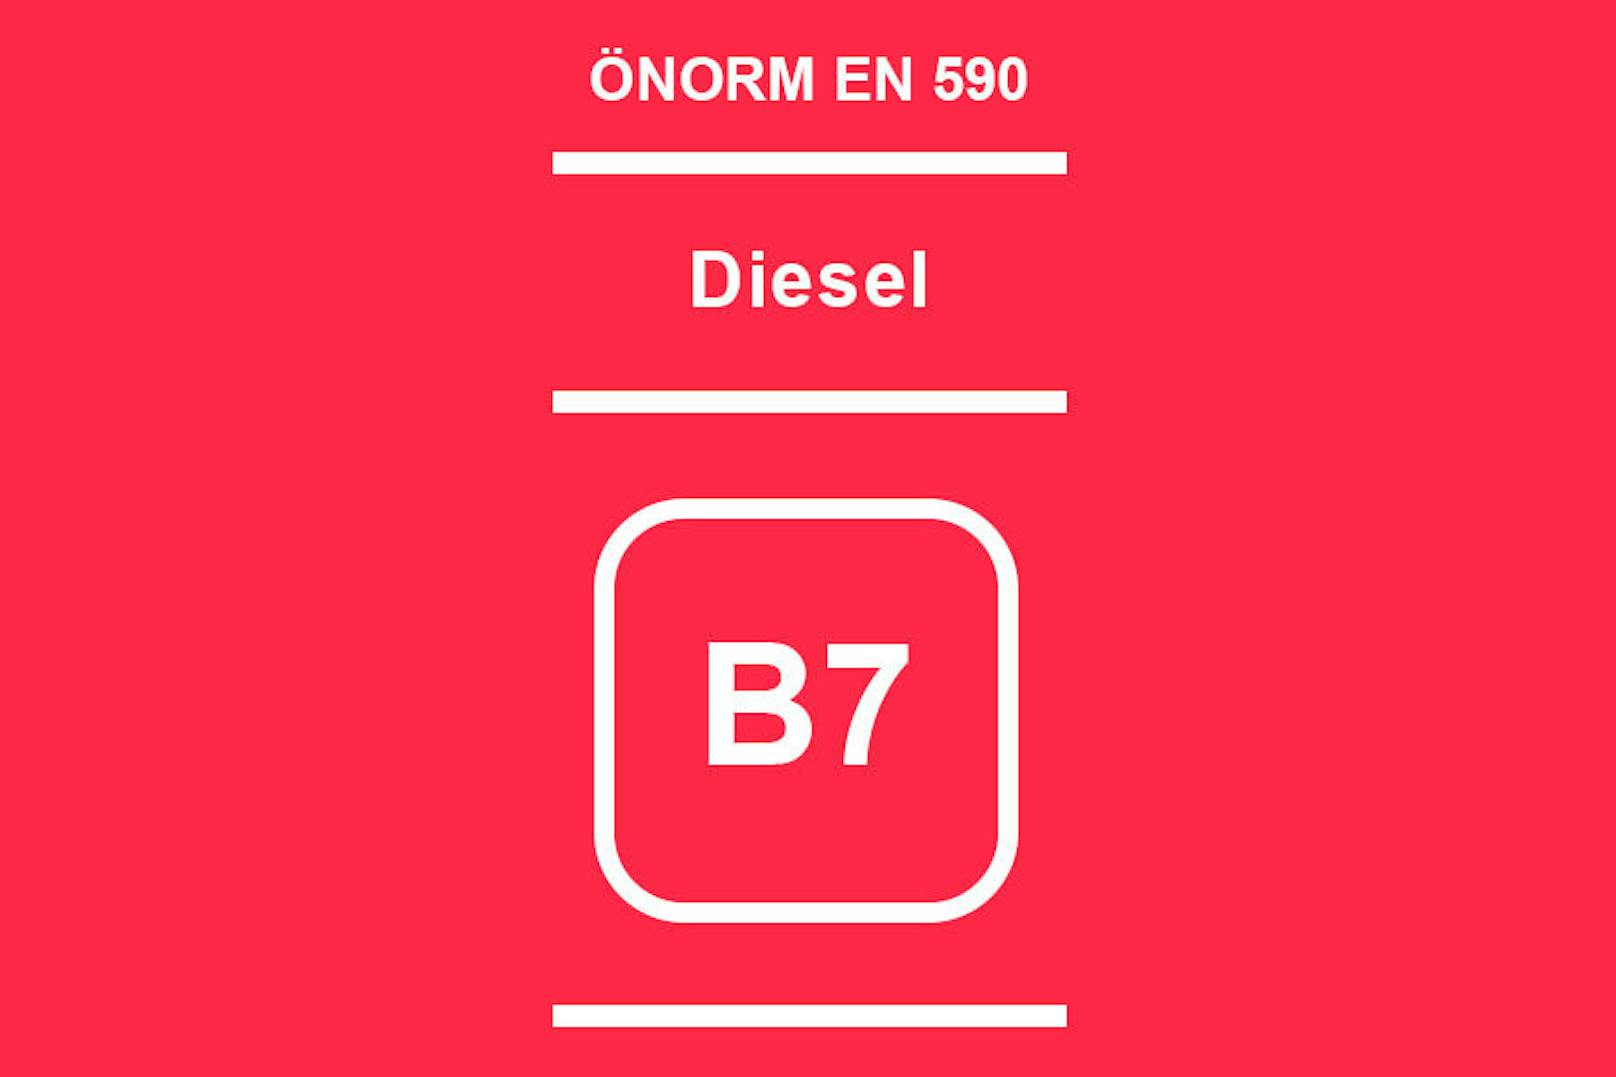 <b>B7: Diesel </b>mit einem Biokraftstoff-Anteil von bis zu 7 Prozent. Zusatzhinweis: Enthält metallische Zusätze.